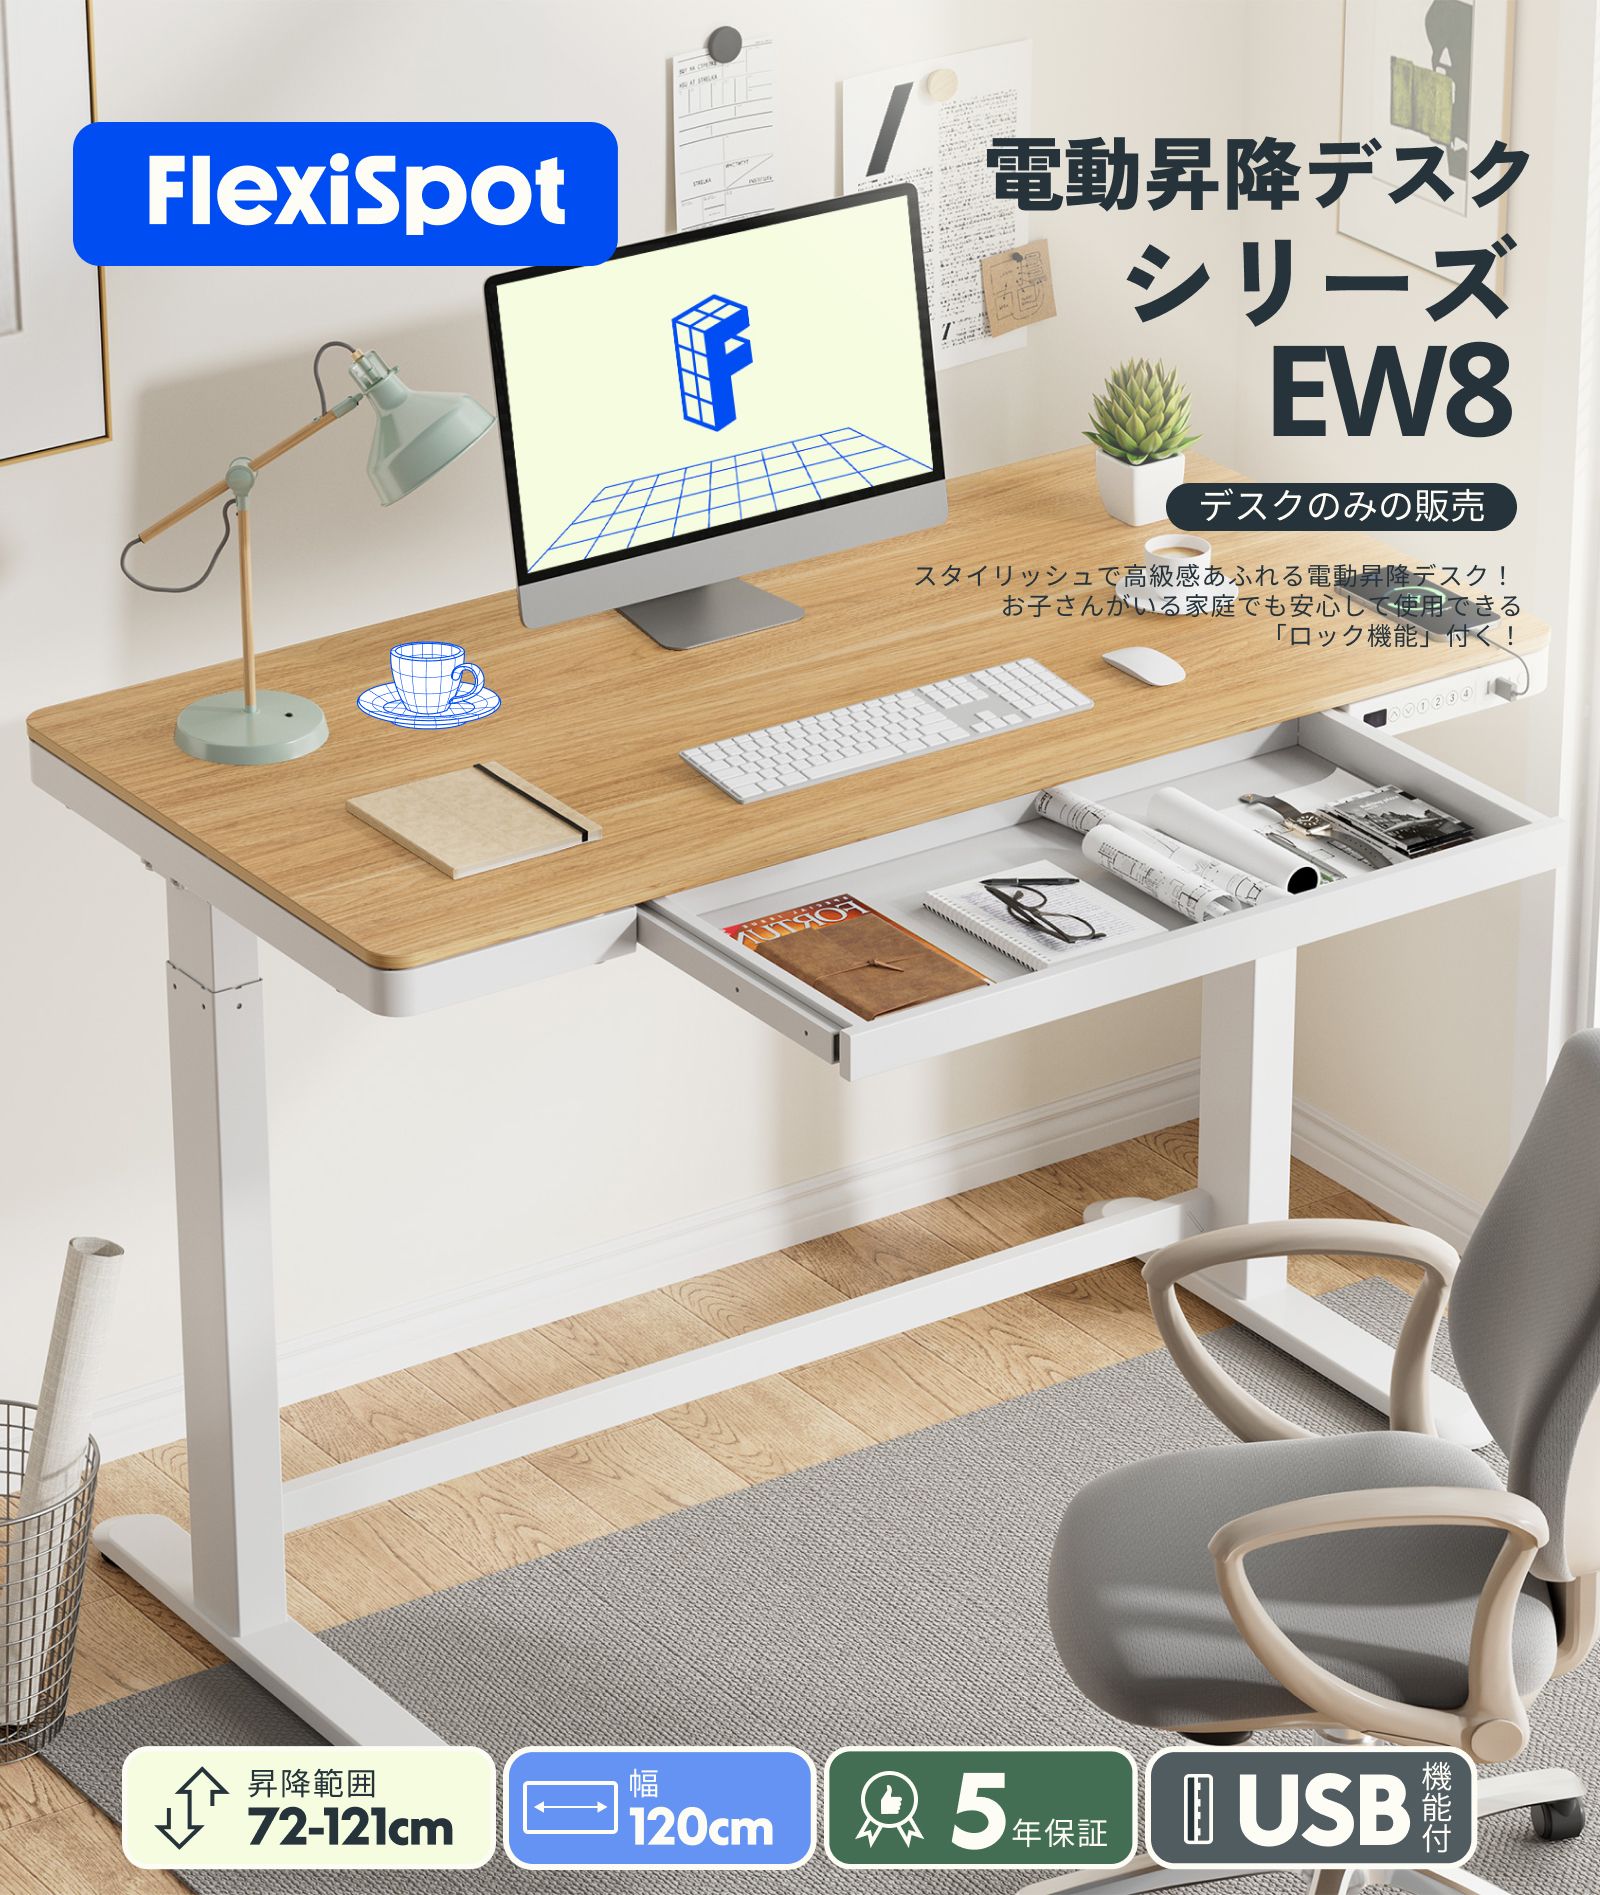 スタンディングデスク FlexiSpot ew8 昇降デスク 電動 オフィスデスク 